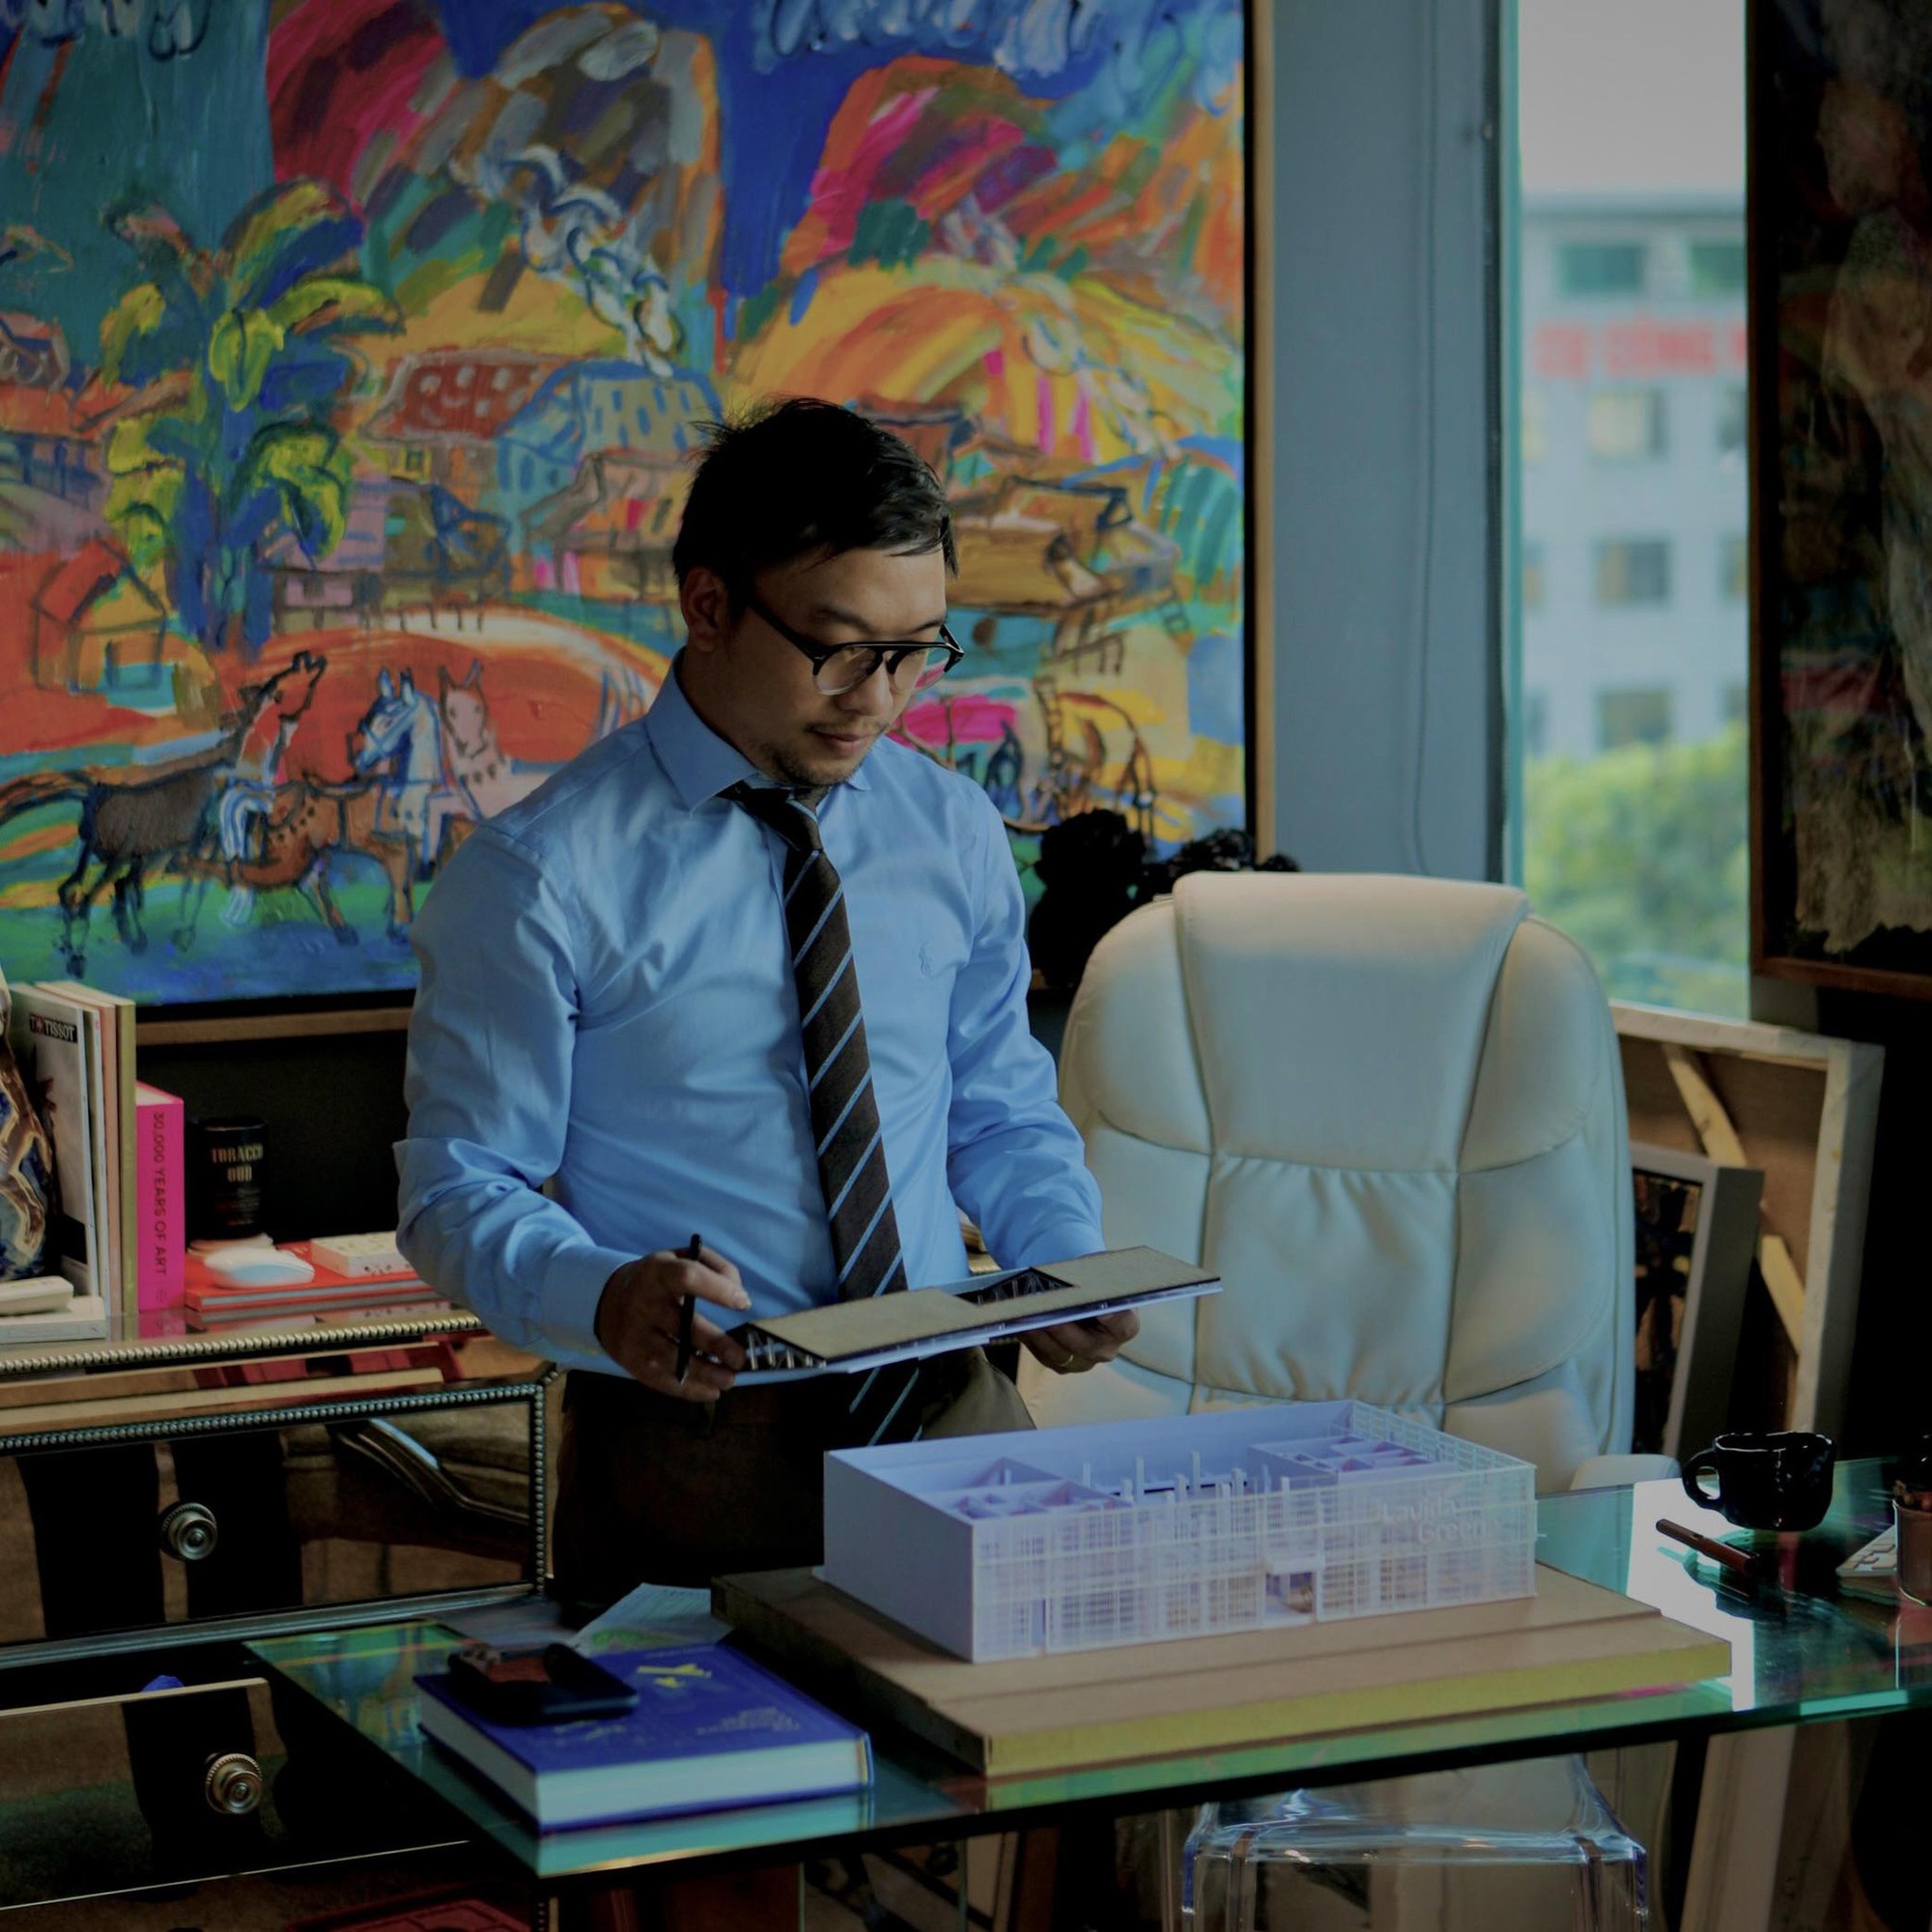 Một công ty ở Hà Nội được sếp chi hơn 5 tỉ đồng đầu tư thiết kế văn phòng cho nhân viên làm việc  - Ảnh 4.